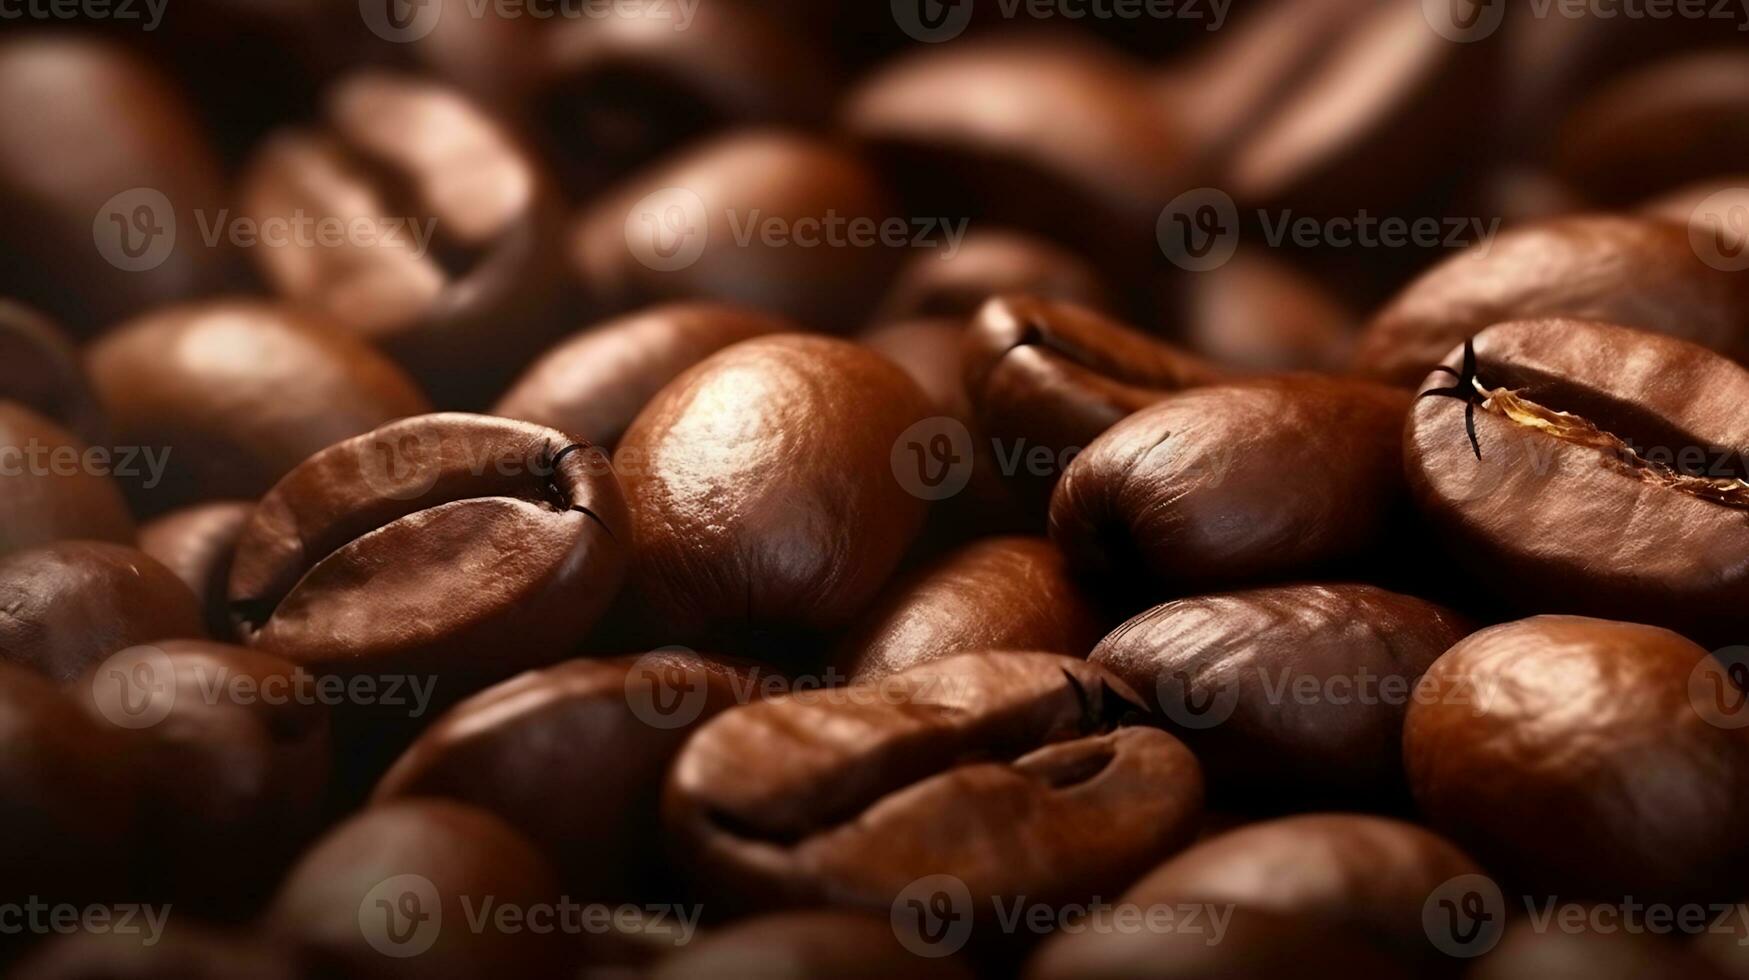 koffie bonen achtergrond. genieten in de detailopname visie van bruin koffie bonen, creëren een verleidelijk spandoek. Ontdek de ingewikkeld details van koffie granen met een detailopname koffie granen achtergrond. foto